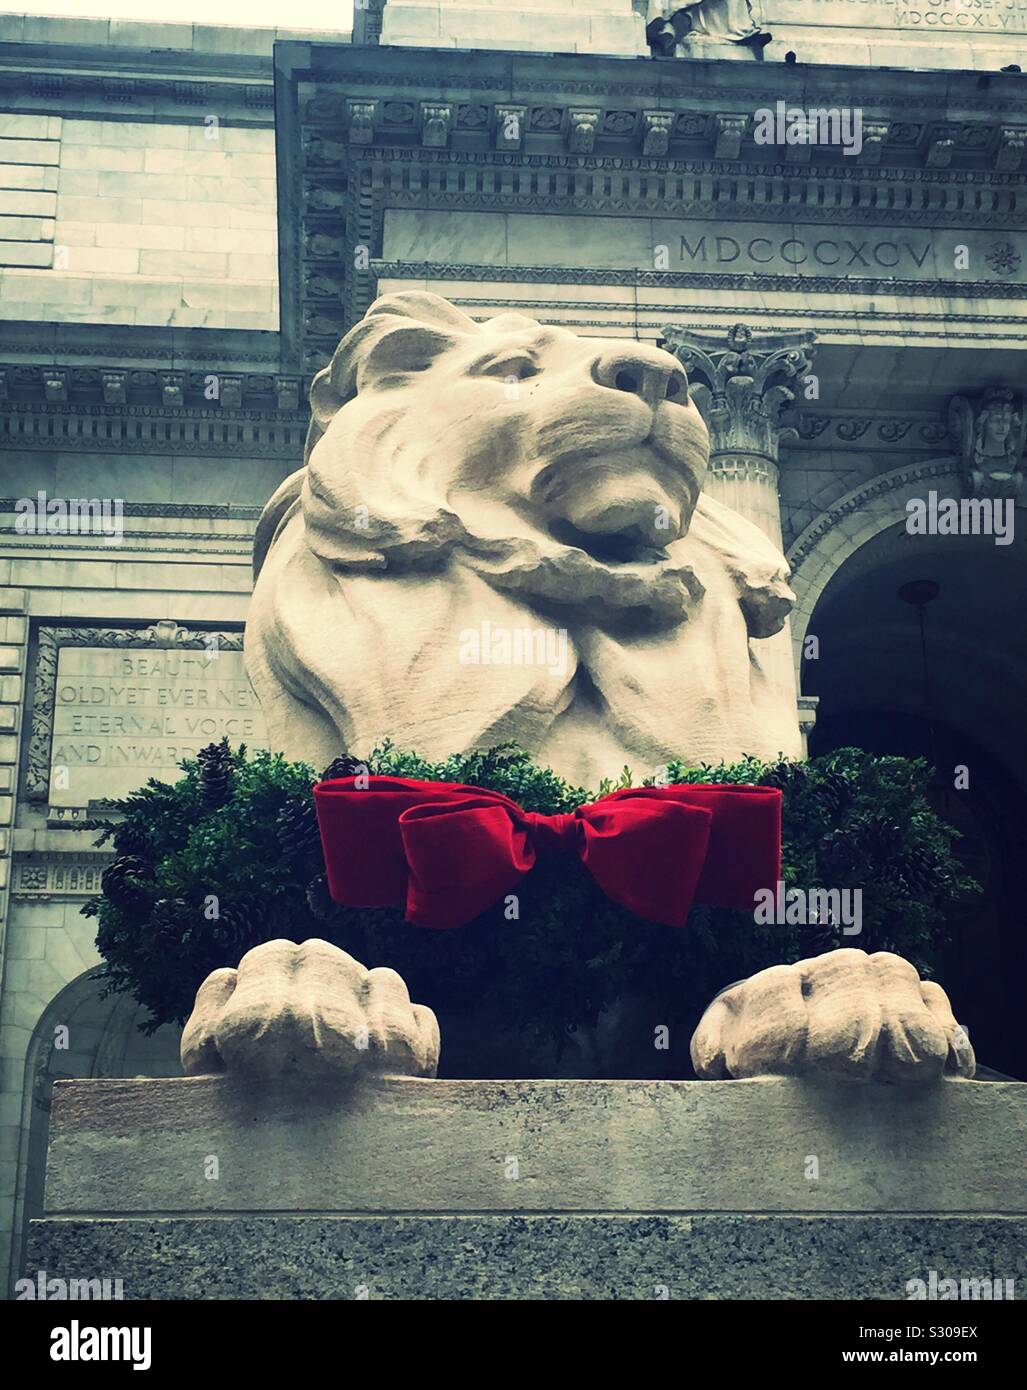 Geduld, einer der beiden berühmten Bibliothek Lions auf der Fifth Avenue in der New York Public Library mit einem festliche Weihnachten Kranz jedes Jahr, NYC, USA dekoriert ist Stockfoto